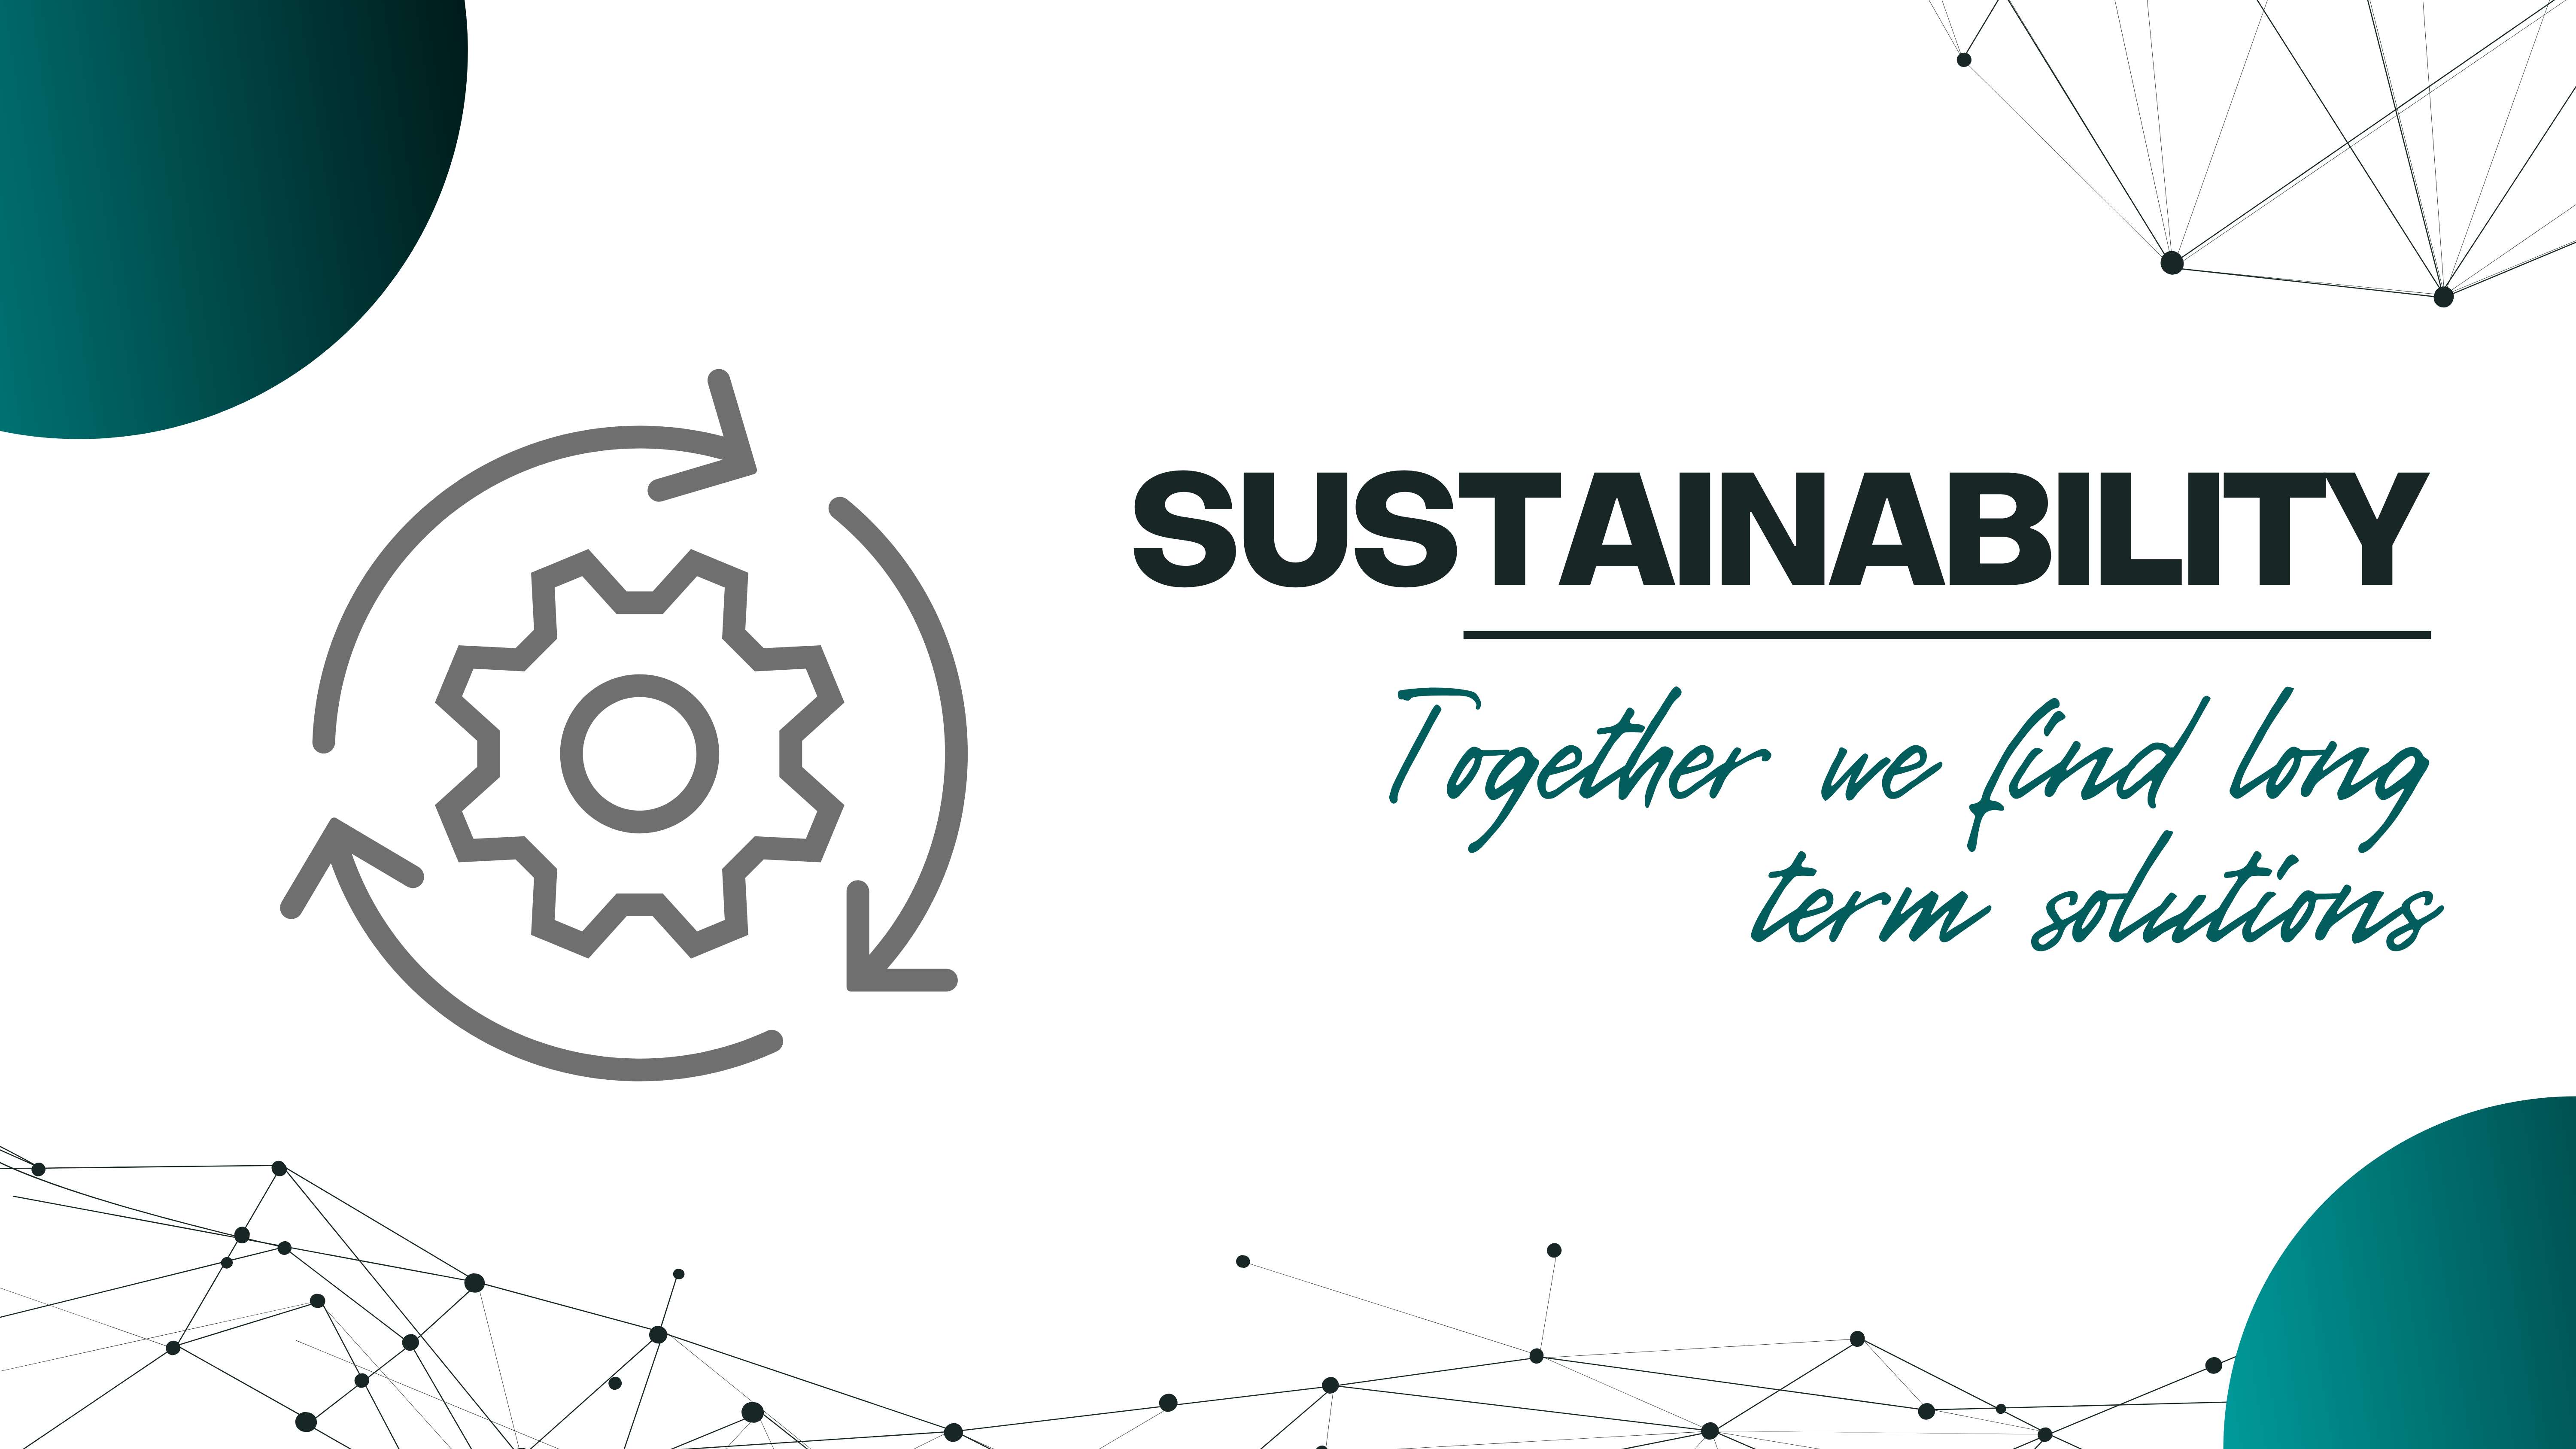 Nachhaltigkeit, wir finden gemeinsam langfristige Lösungen